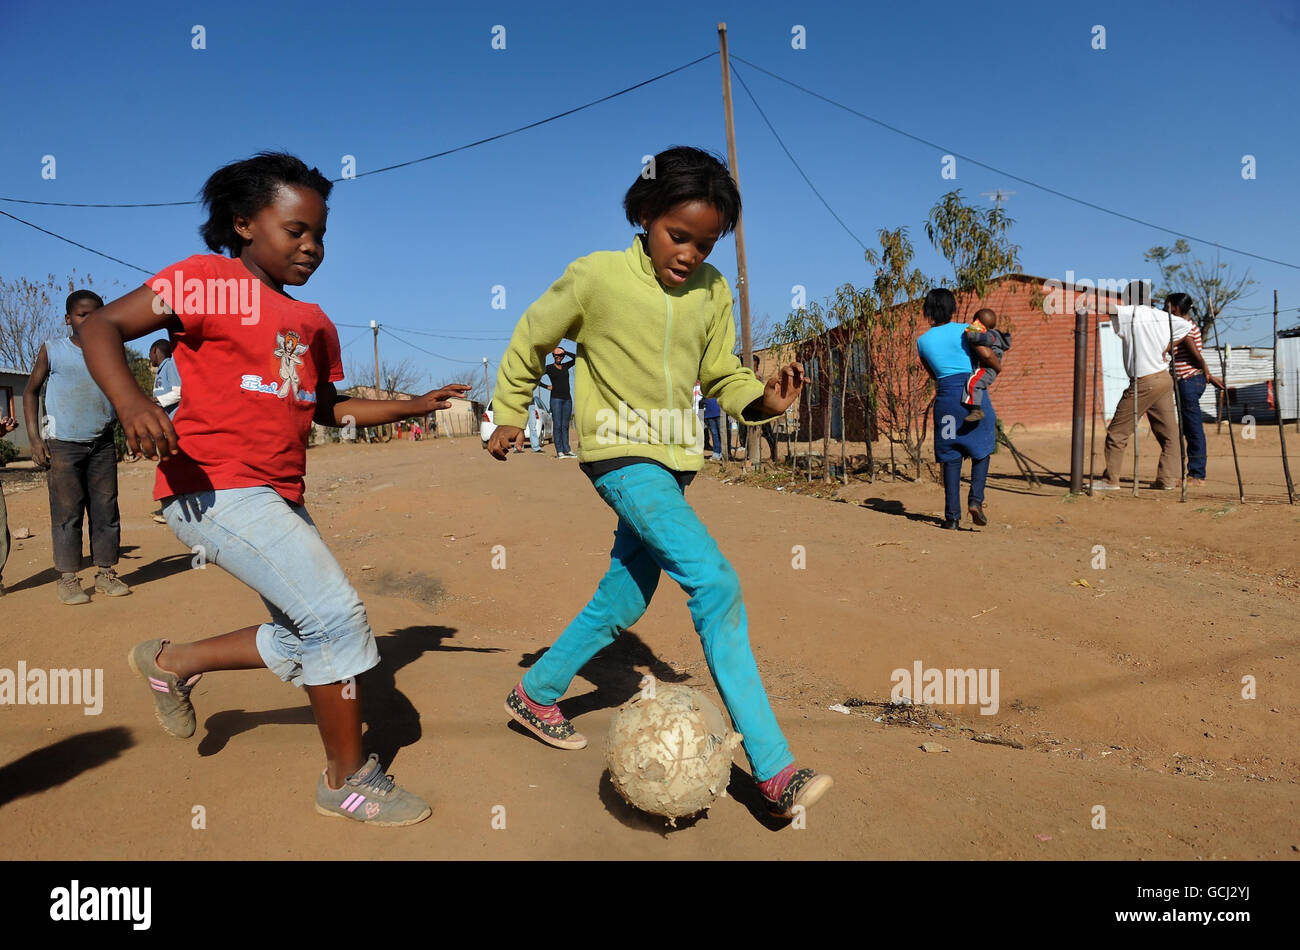 Fútbol - Copa Mundial de la FIFA Sudáfrica 2010 - Daily Life Parys. Los niños juegan al fútbol en la ciudad de Parys en el Estado Libre, Sudáfrica. Foto de stock